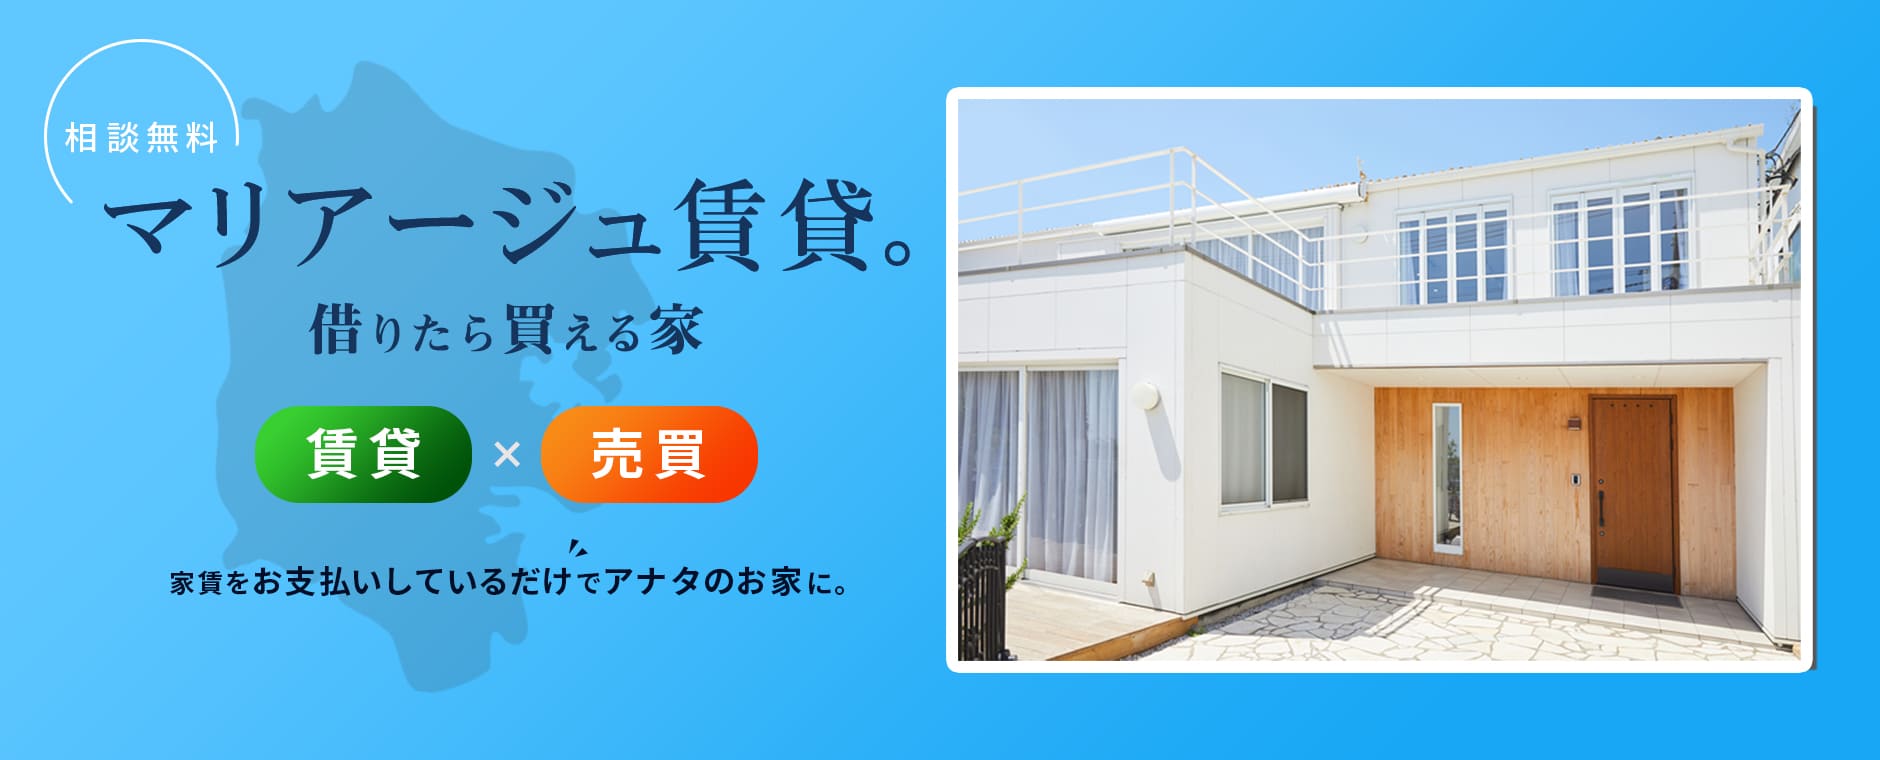 横浜で譲渡型賃貸住宅のことなら横浜の「マリアージュ賃貸。」